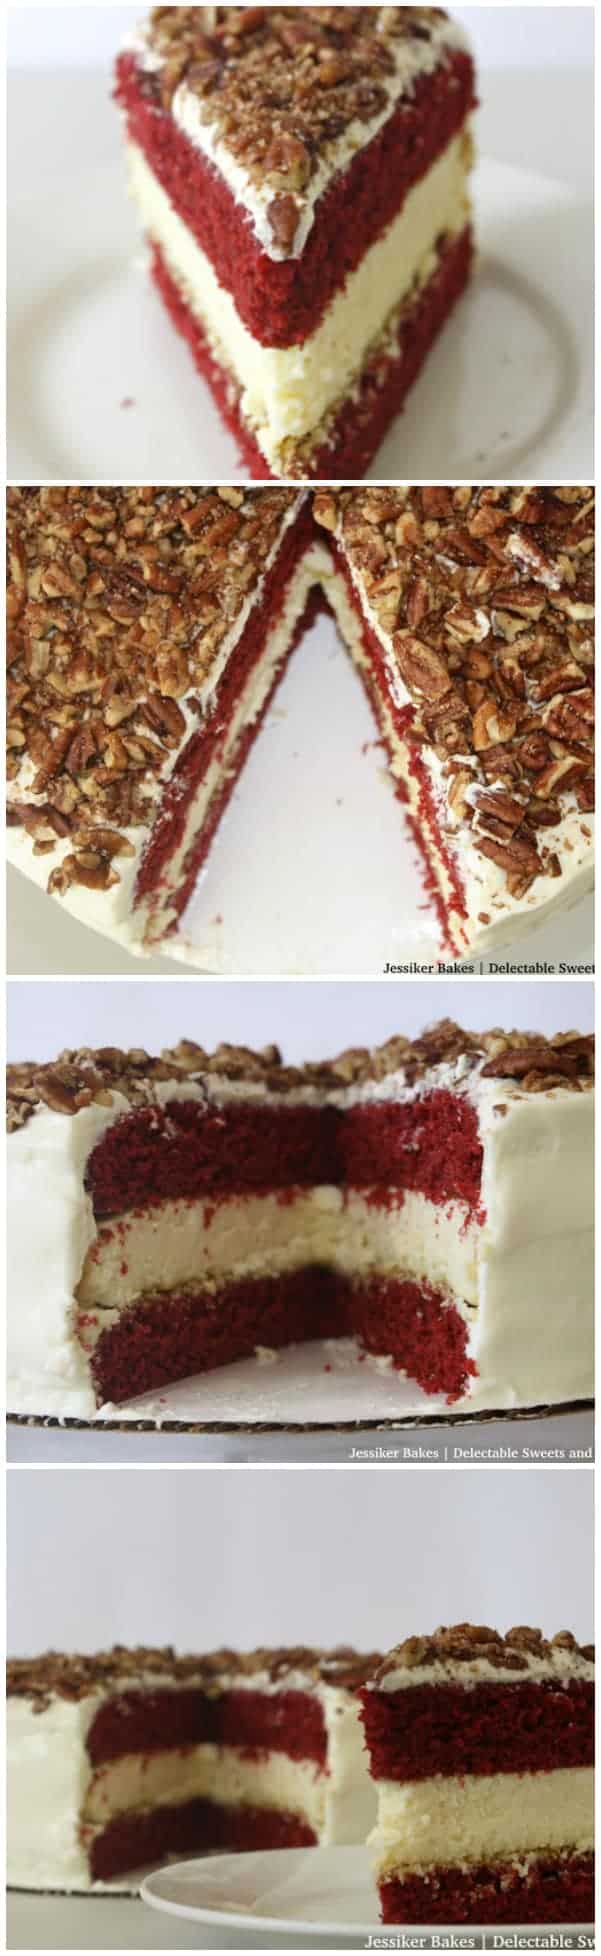 Slice of red velvet cake cheesecake.